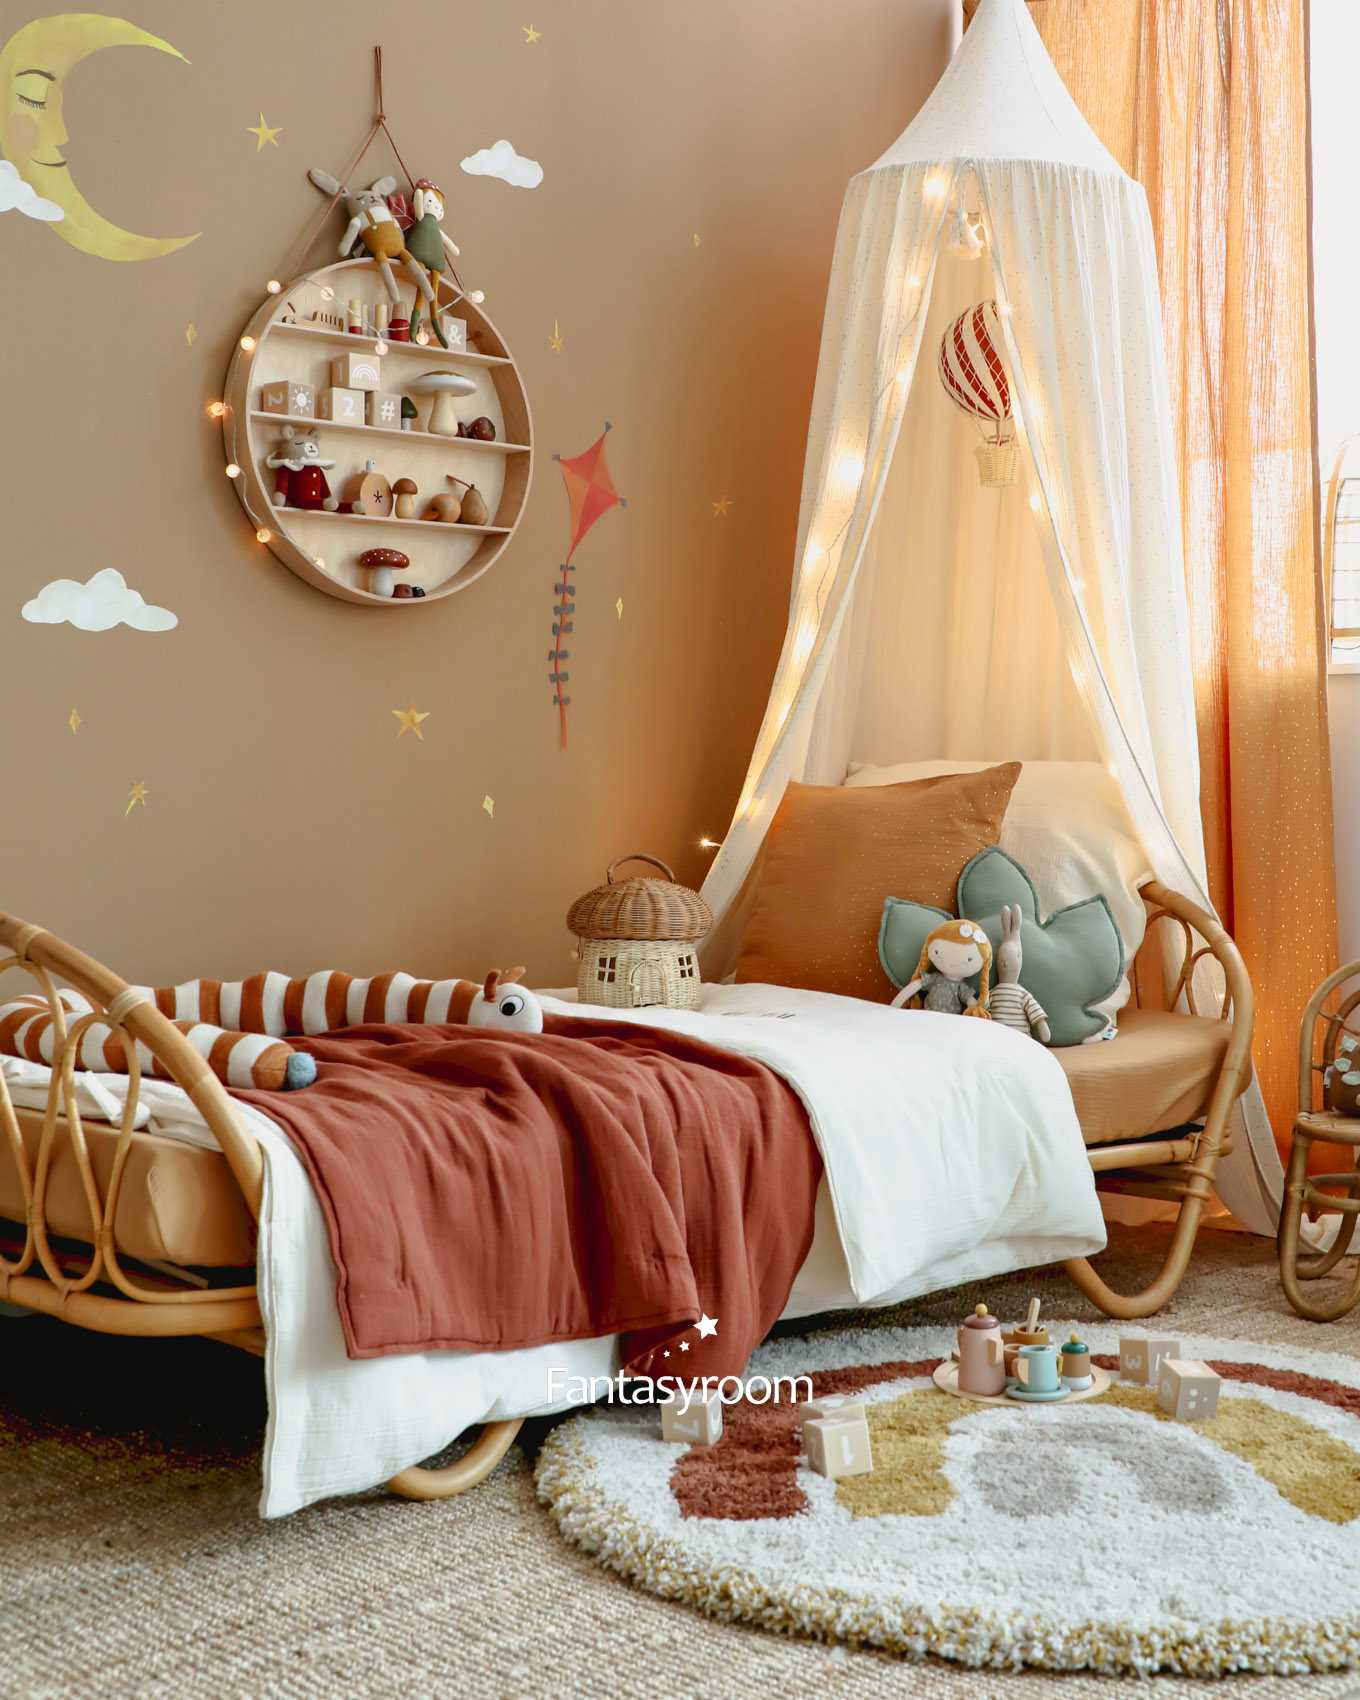 Kinderzimmer mit Rattanbett, Baldachin und Deko in Braun und Creme